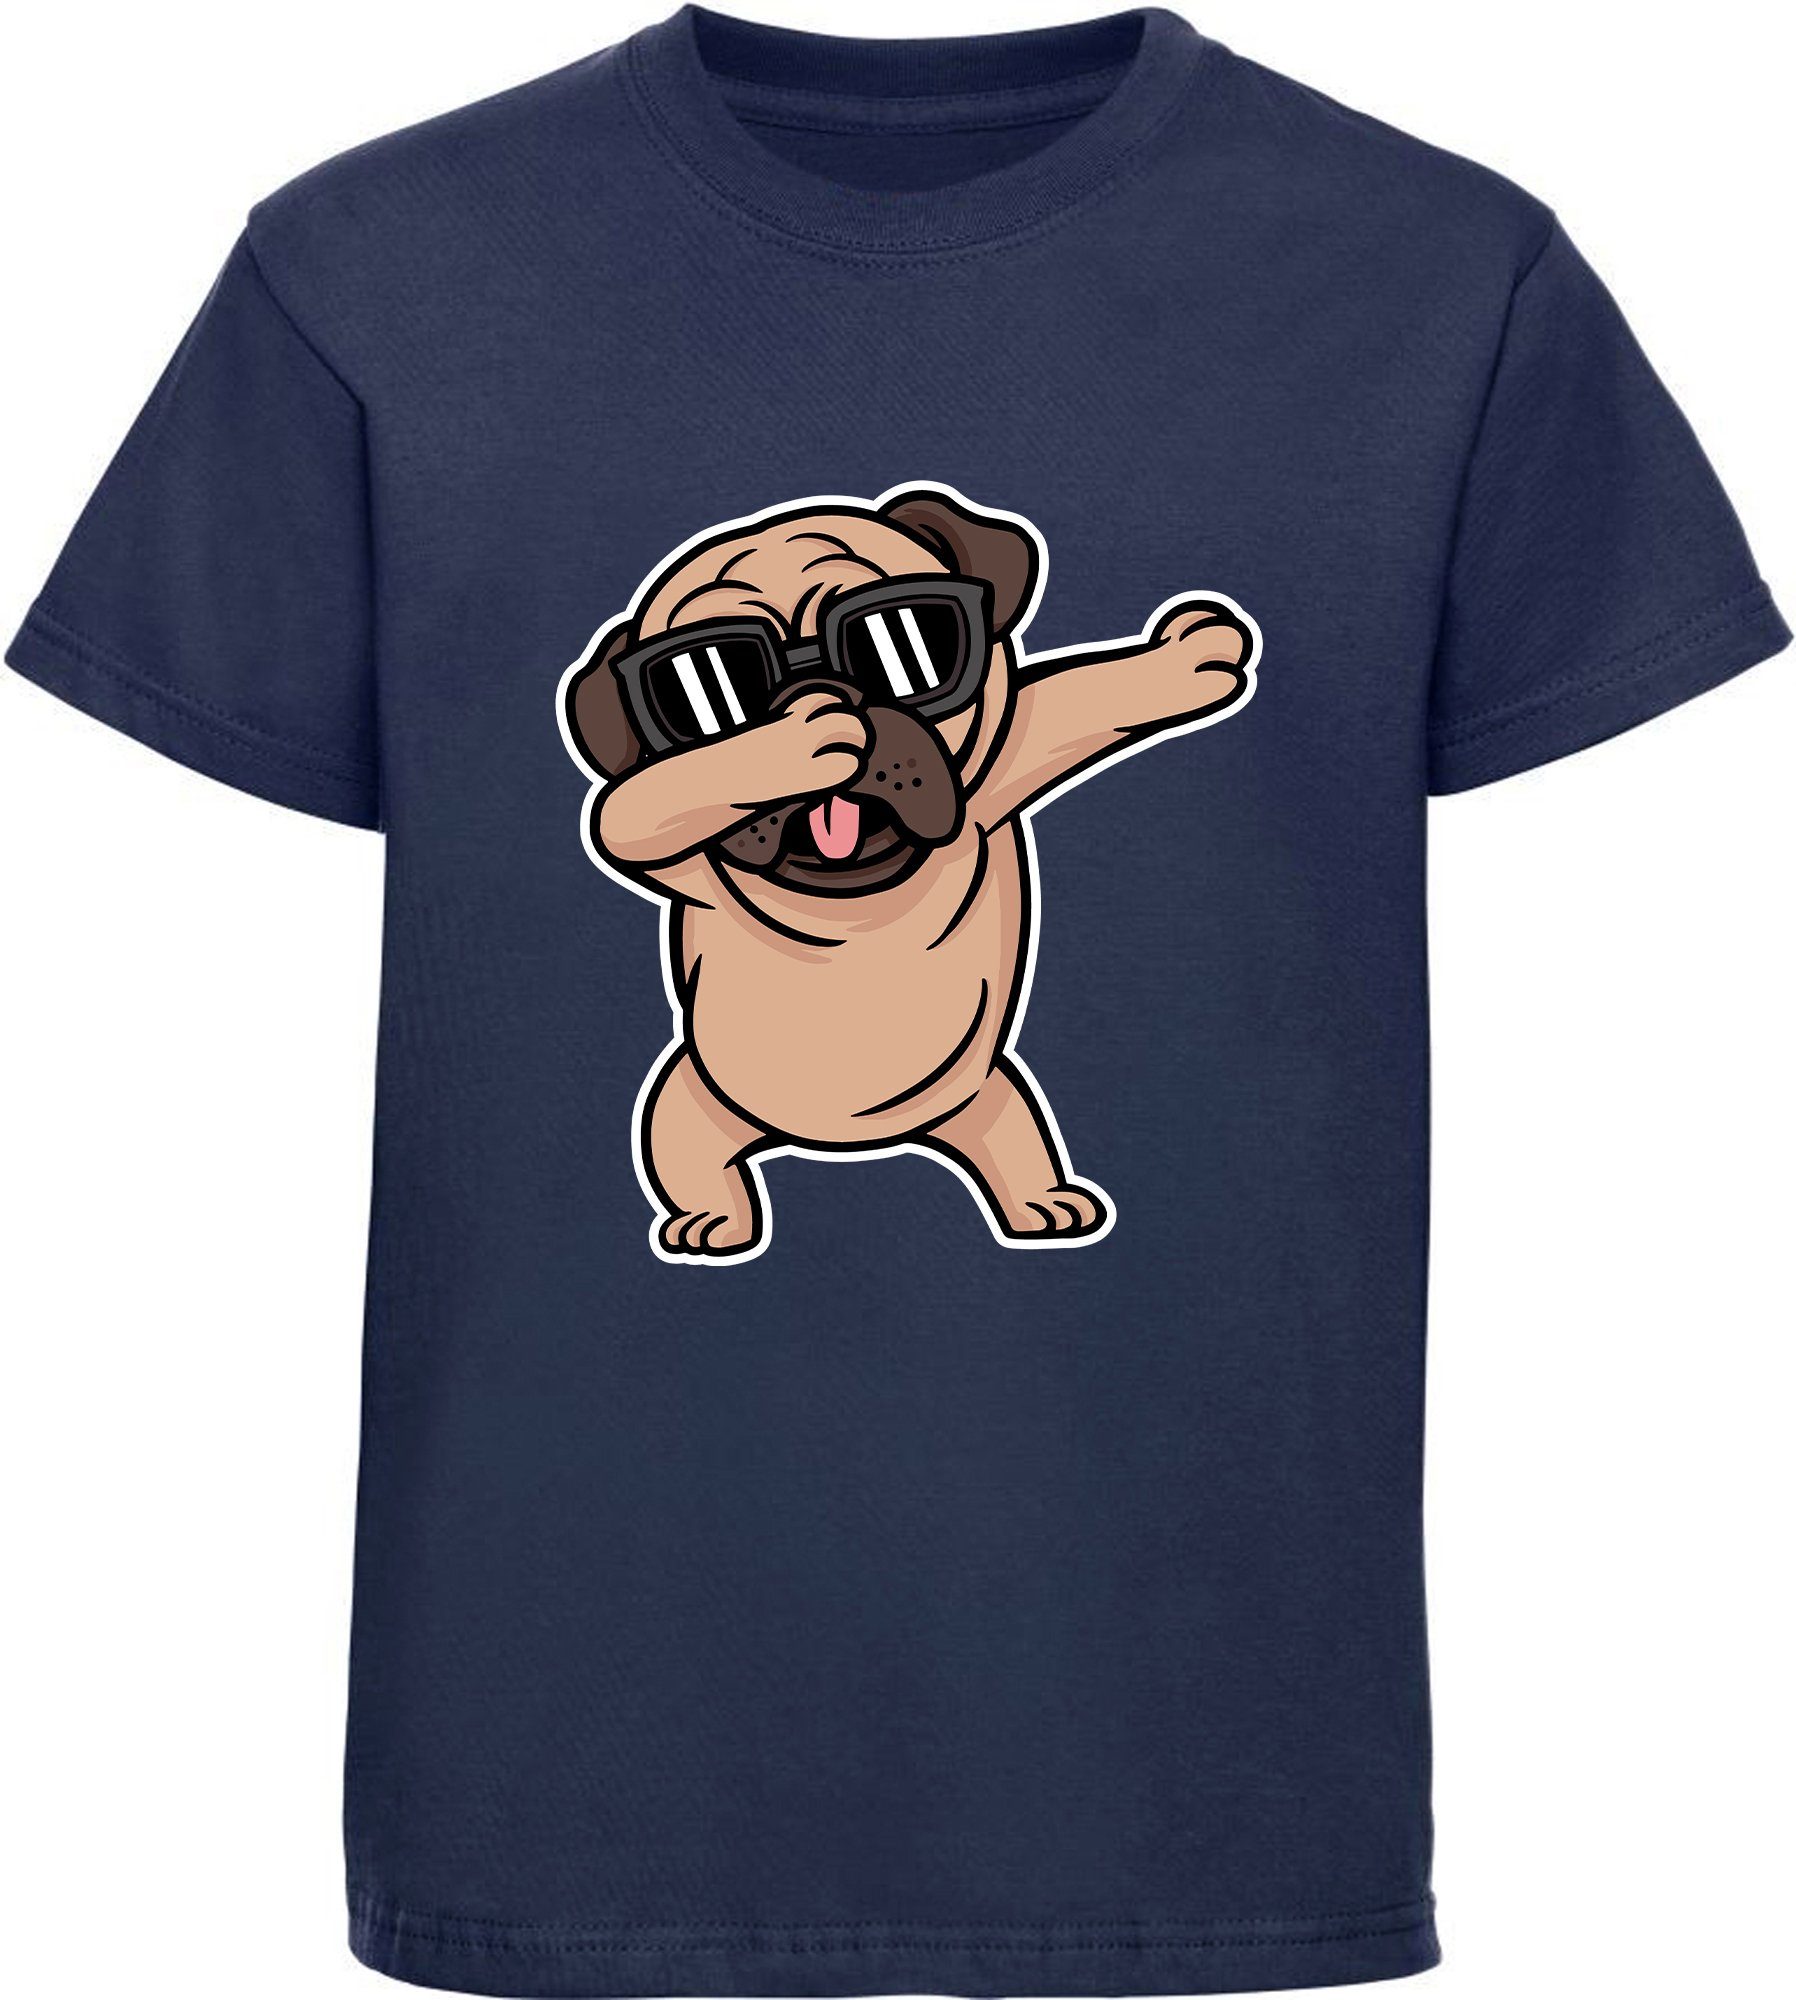 MyDesign24 Print-Shirt Kinder Hunde T-Shirt bedruckt - dab tanzender Hund Baumwollshirt mit Aufdruck, i238 navy blau